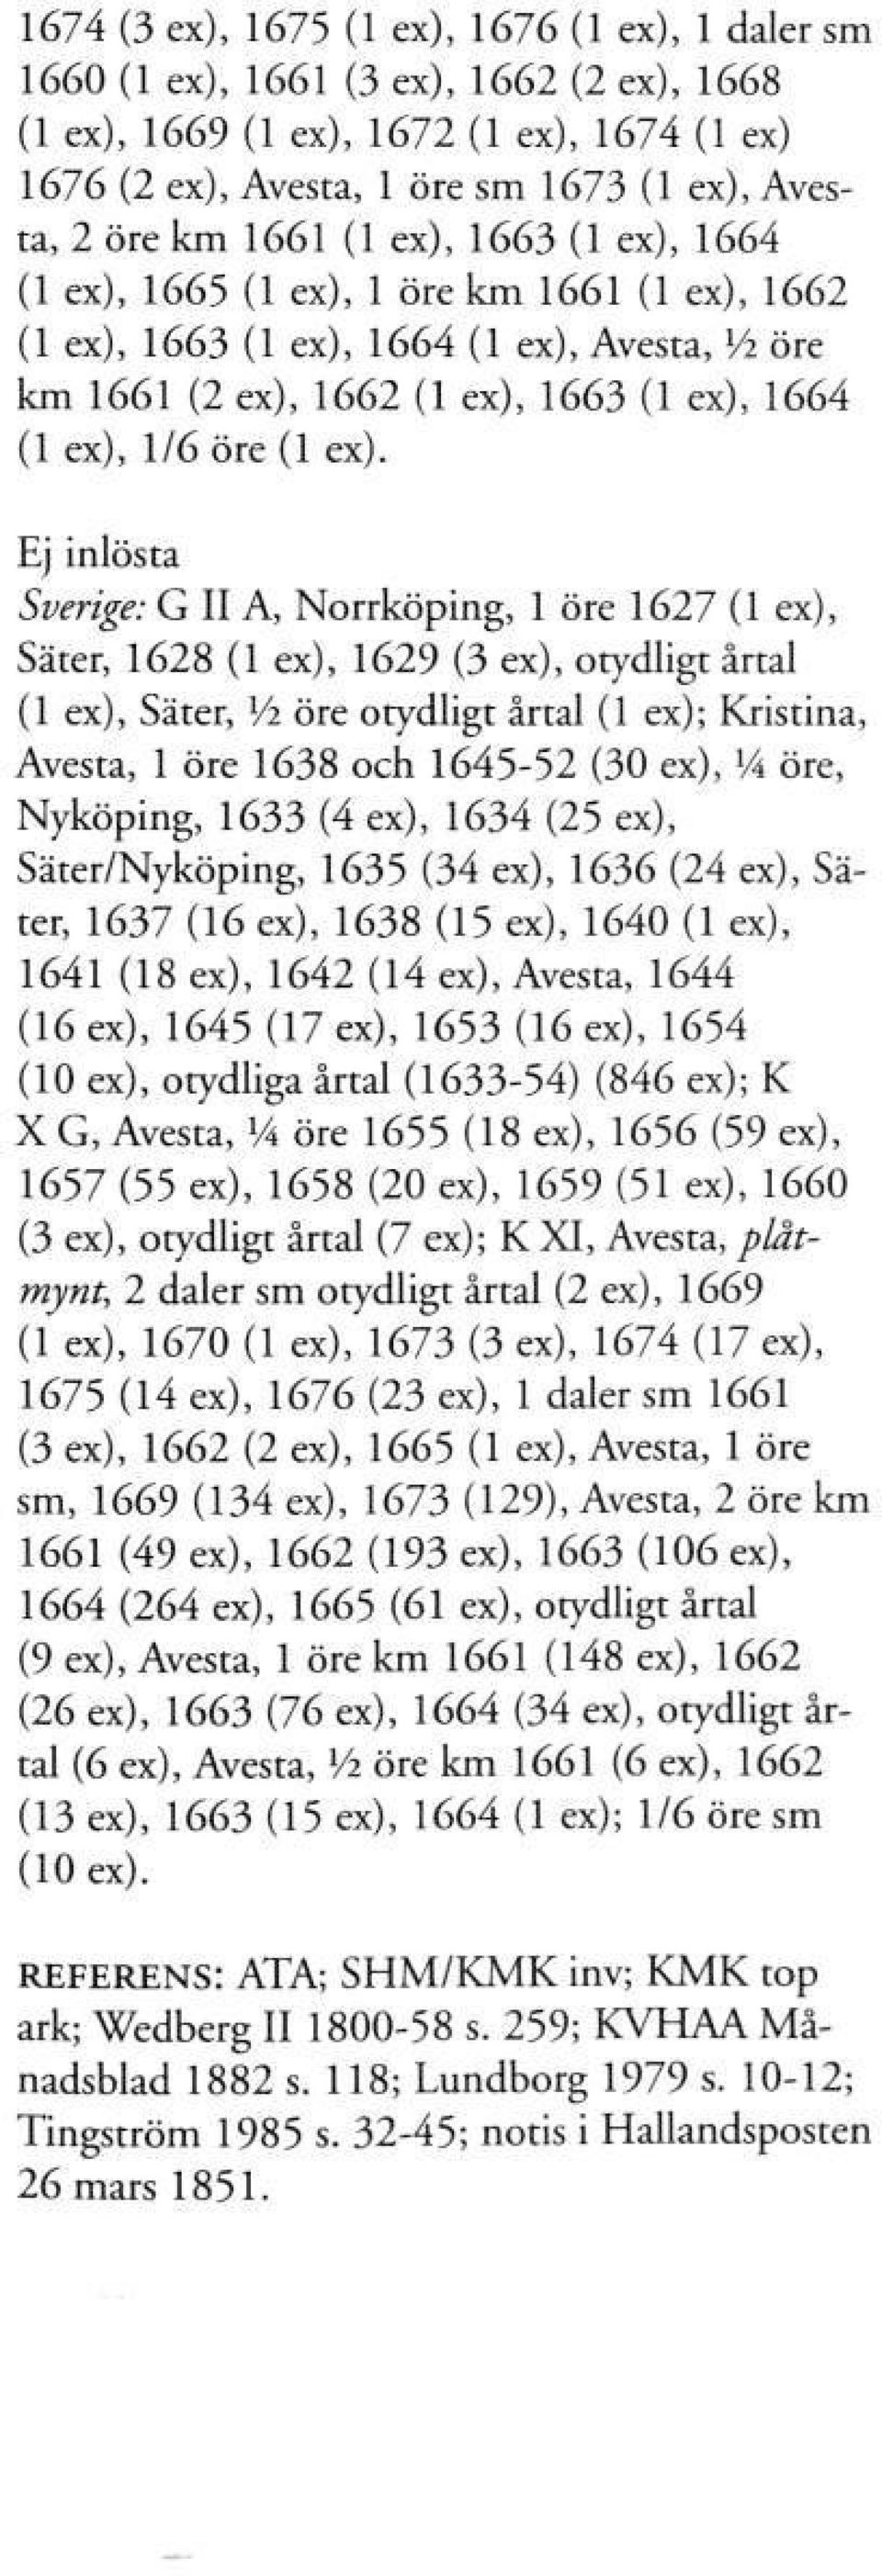 Ej inlösta Sverige: G II A, Norrköping, 1 öre 1627 (1 ex), Säter, 1628 (1 ex), 1629 (3 ex), otydligt årtal (1 ex), Säter, Vi öre otydligt årtal (1 ex); Kristina, Avesta, 1 öre 1638 och 1645-52 (30